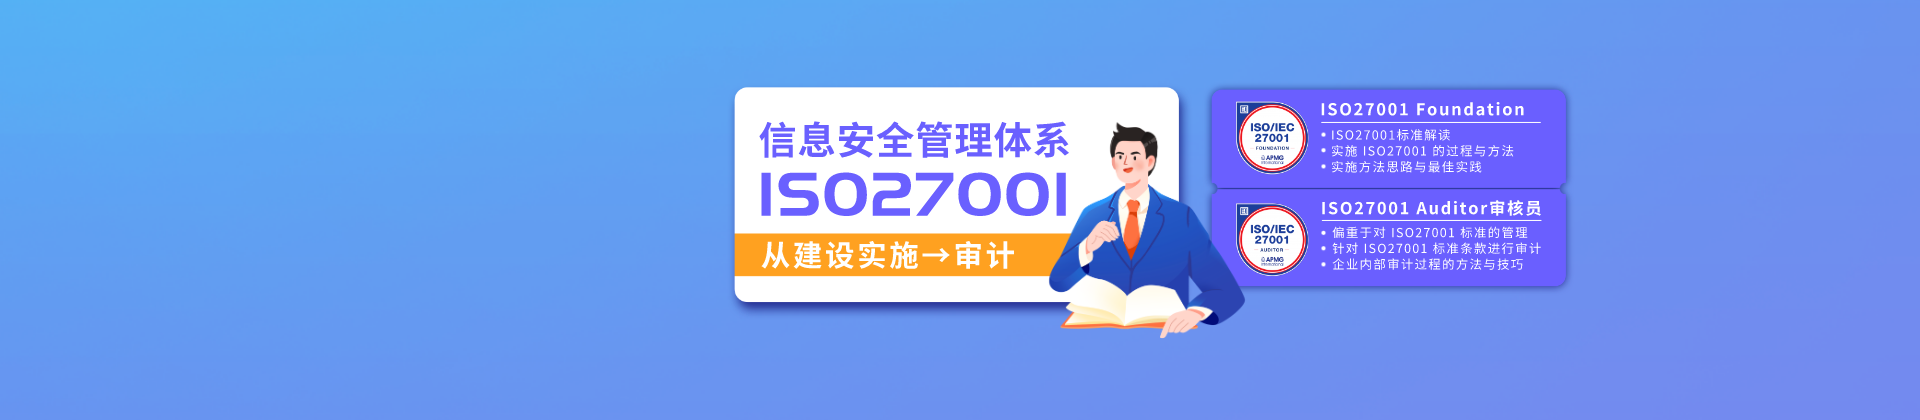 ISO27001系列